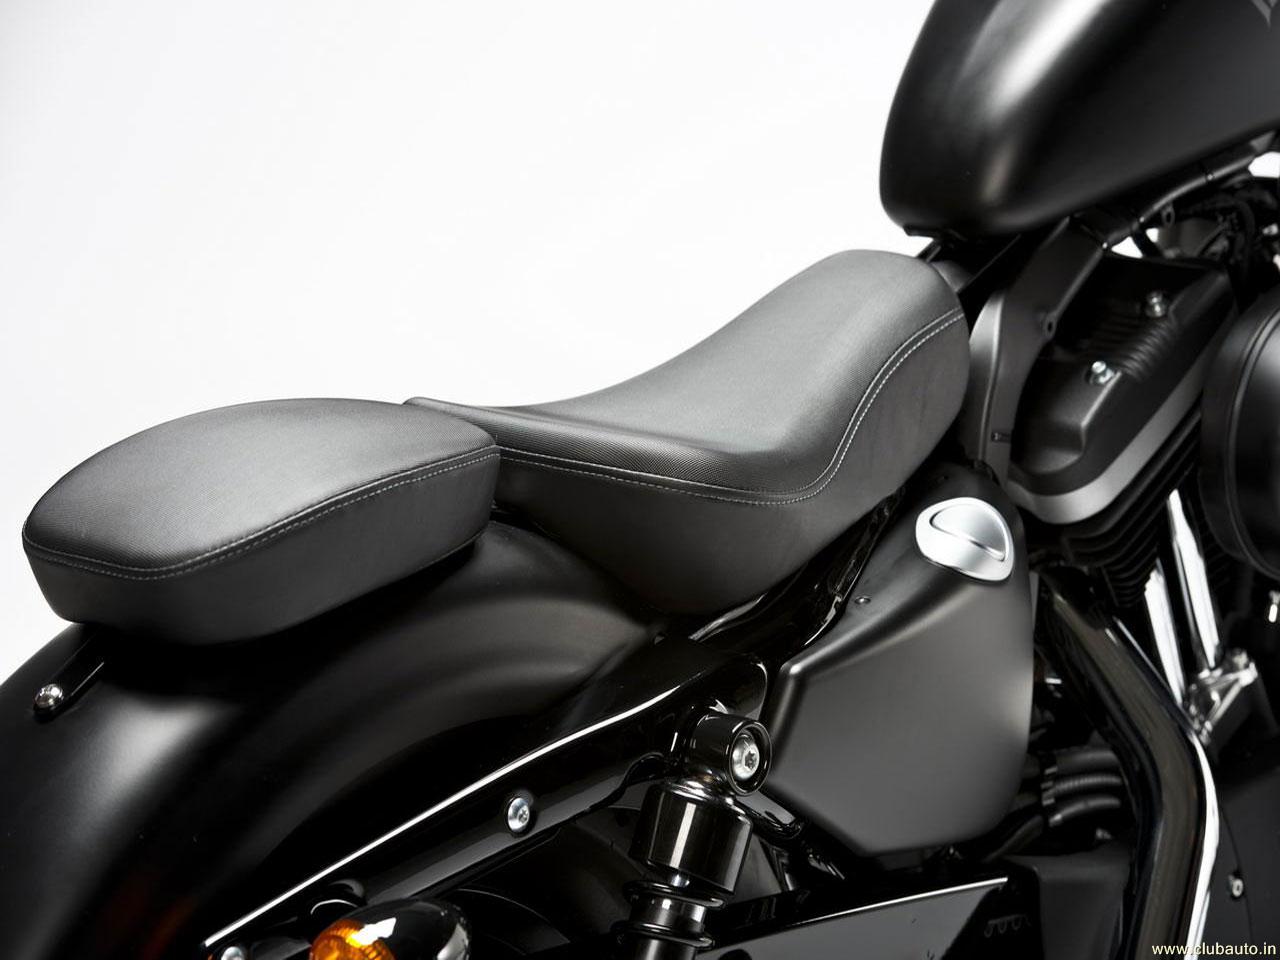 Wallpaper Bikes Harley Davidson Iron